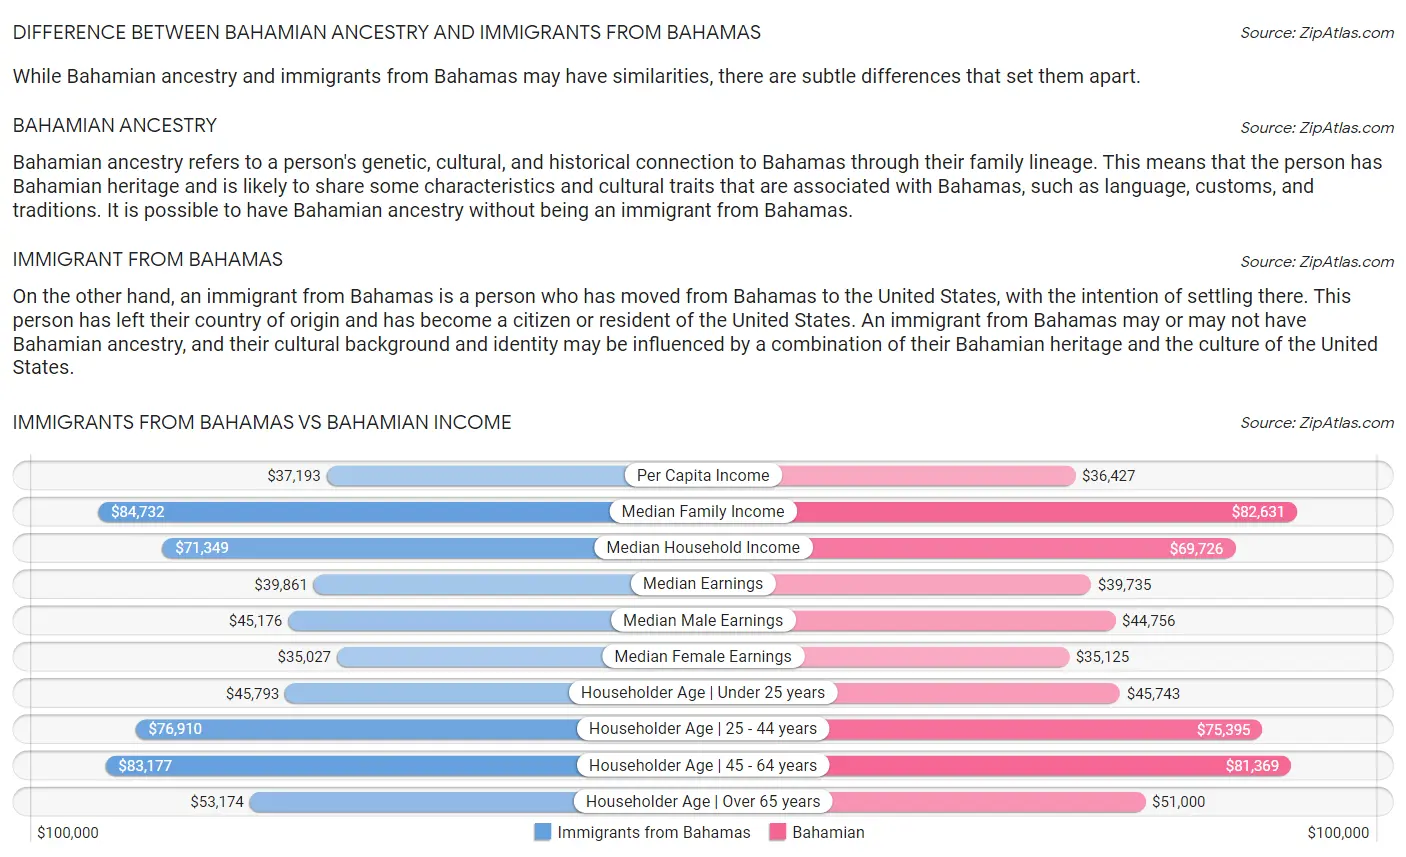 Immigrants from Bahamas vs Bahamian Income